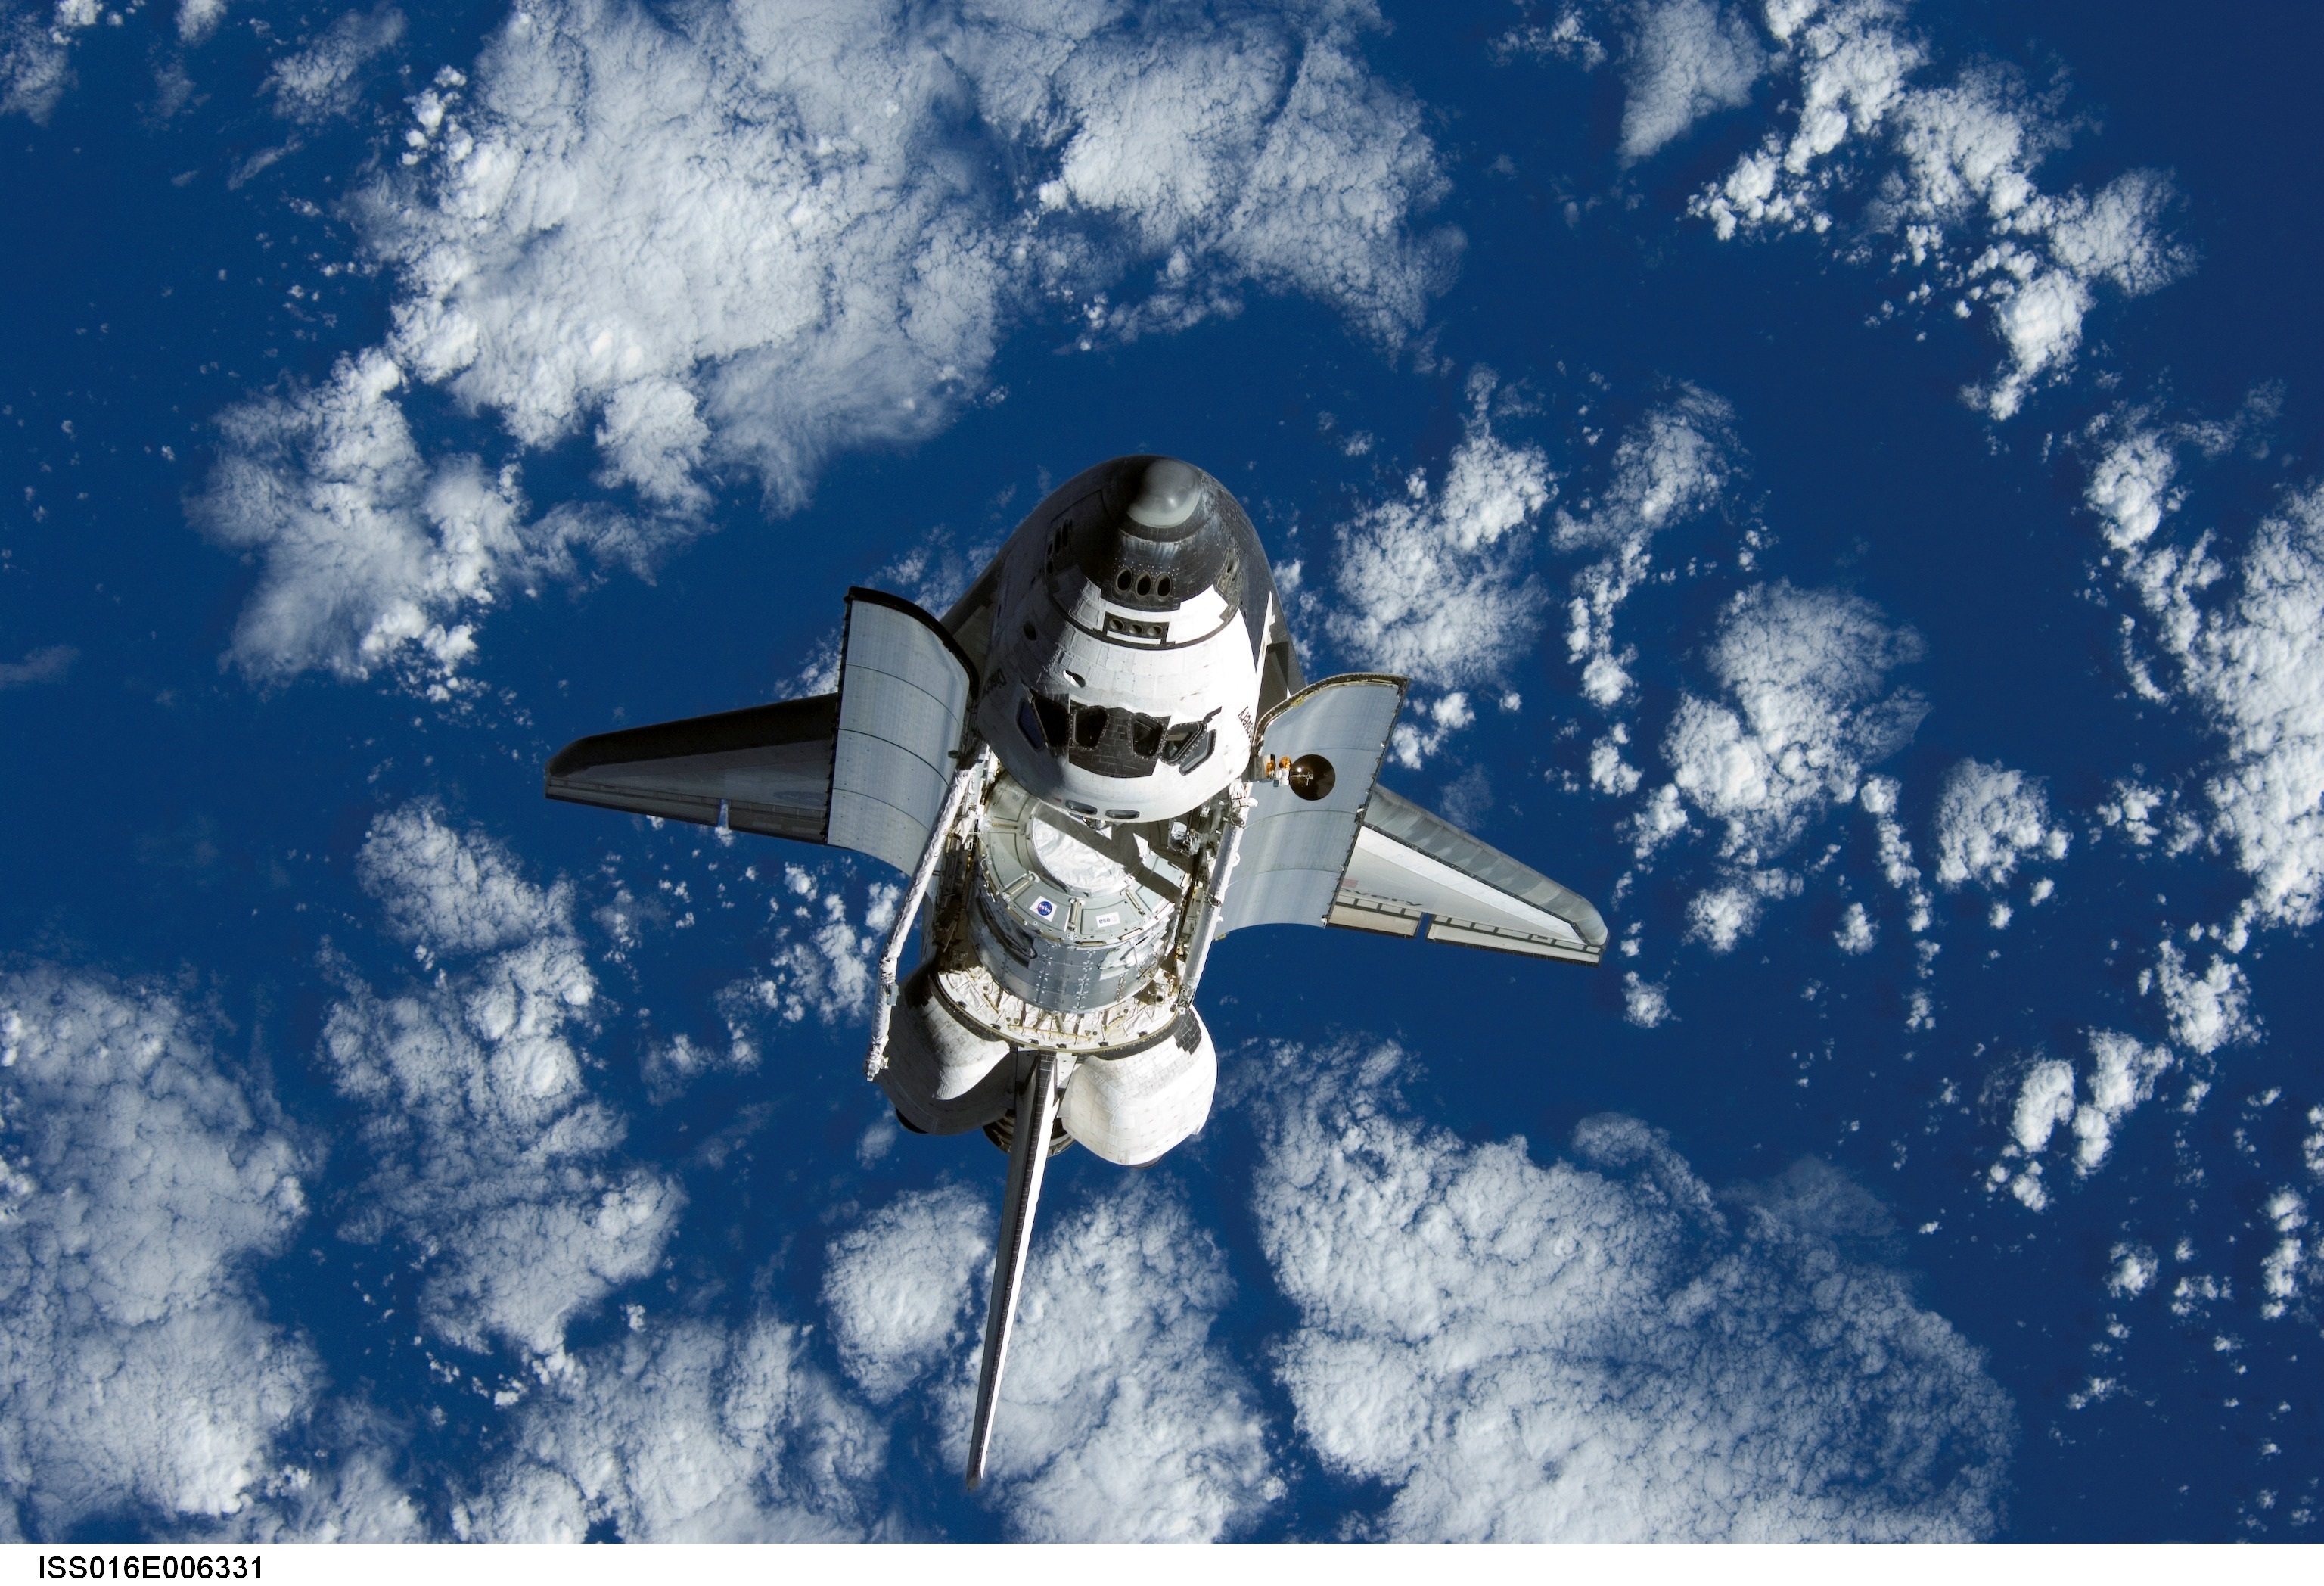 Space Shuttle, Height, High, Lunar, Shuttle, HQ Photo